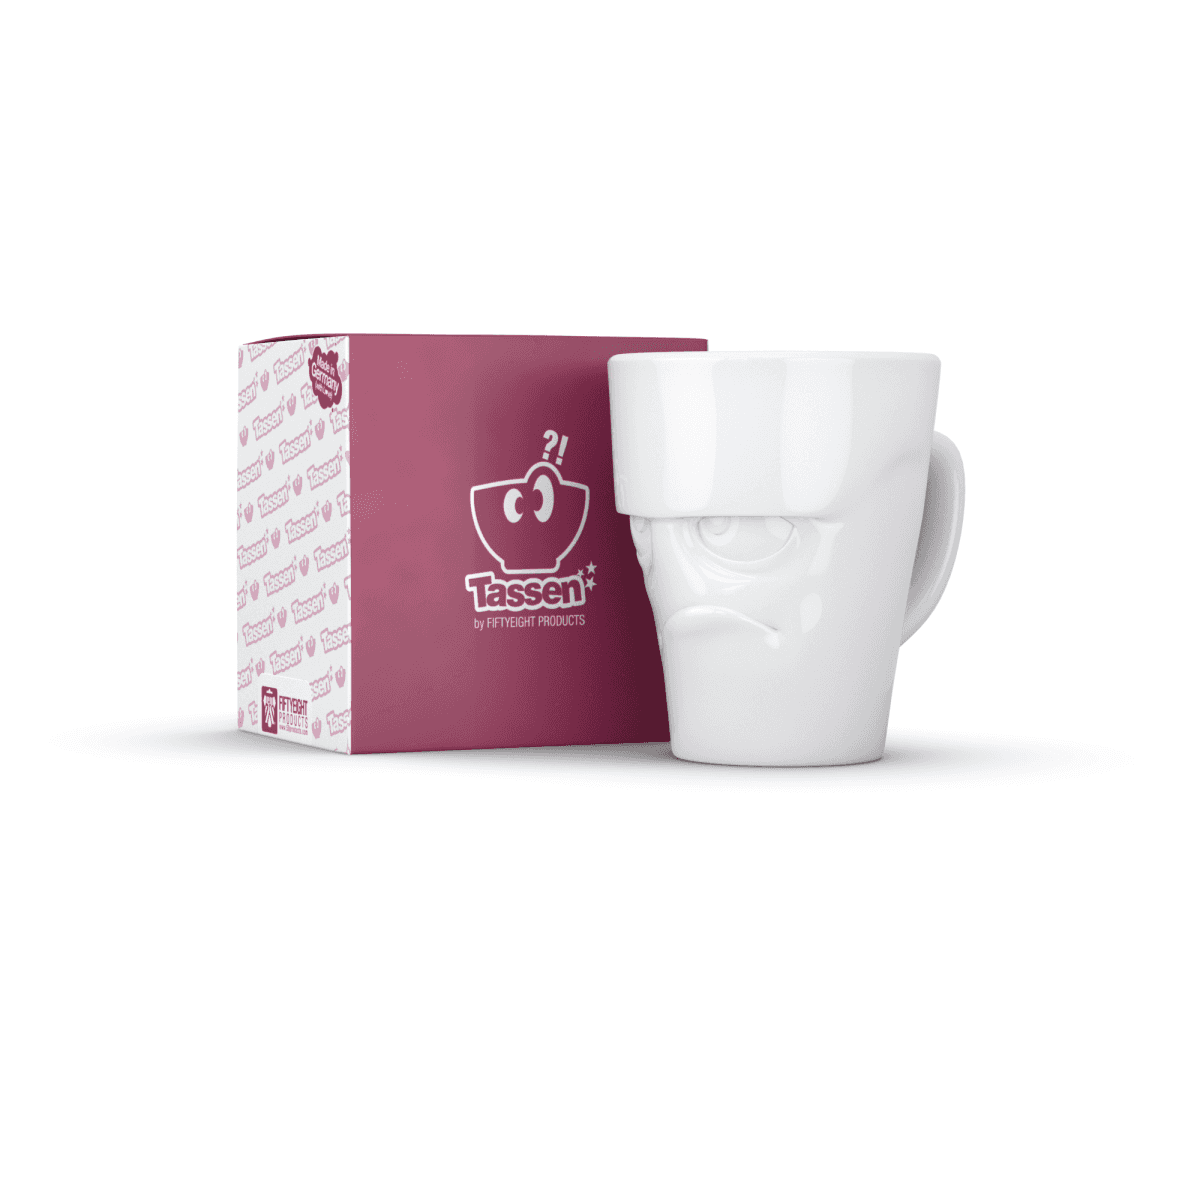 Immagine del prodotto Mug Scontroso 3D in Porcellana 350 ml con Manico | TASSEN By Fiftyeight Products